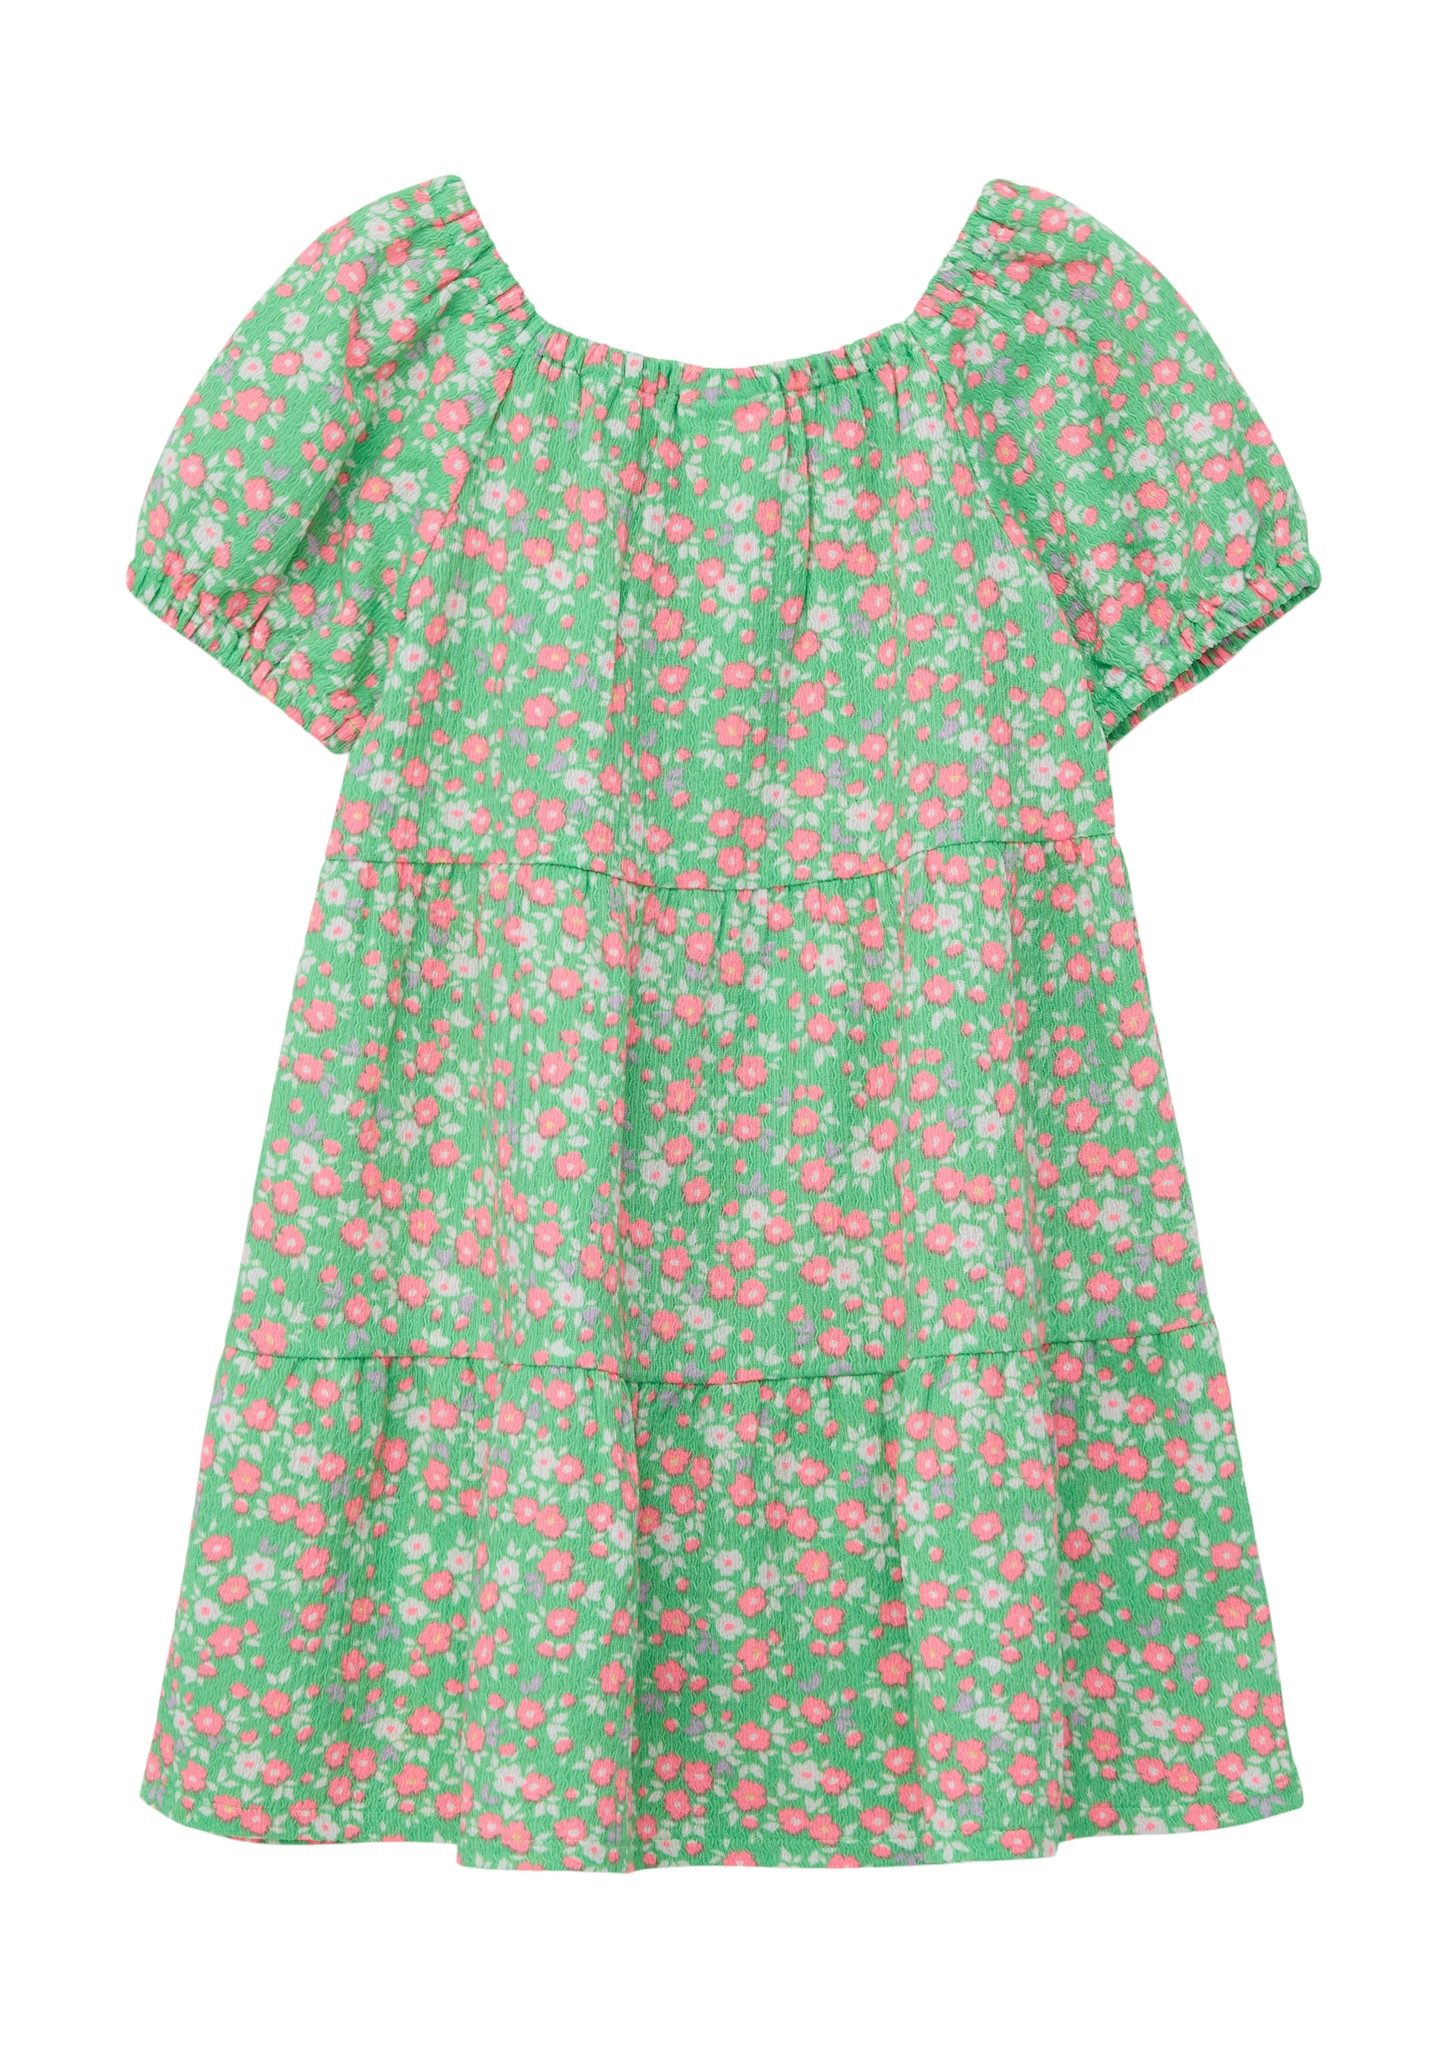 S.Oliver gebloemde jurk groen roze Meisjes Polyester Boothals Bloemen 116